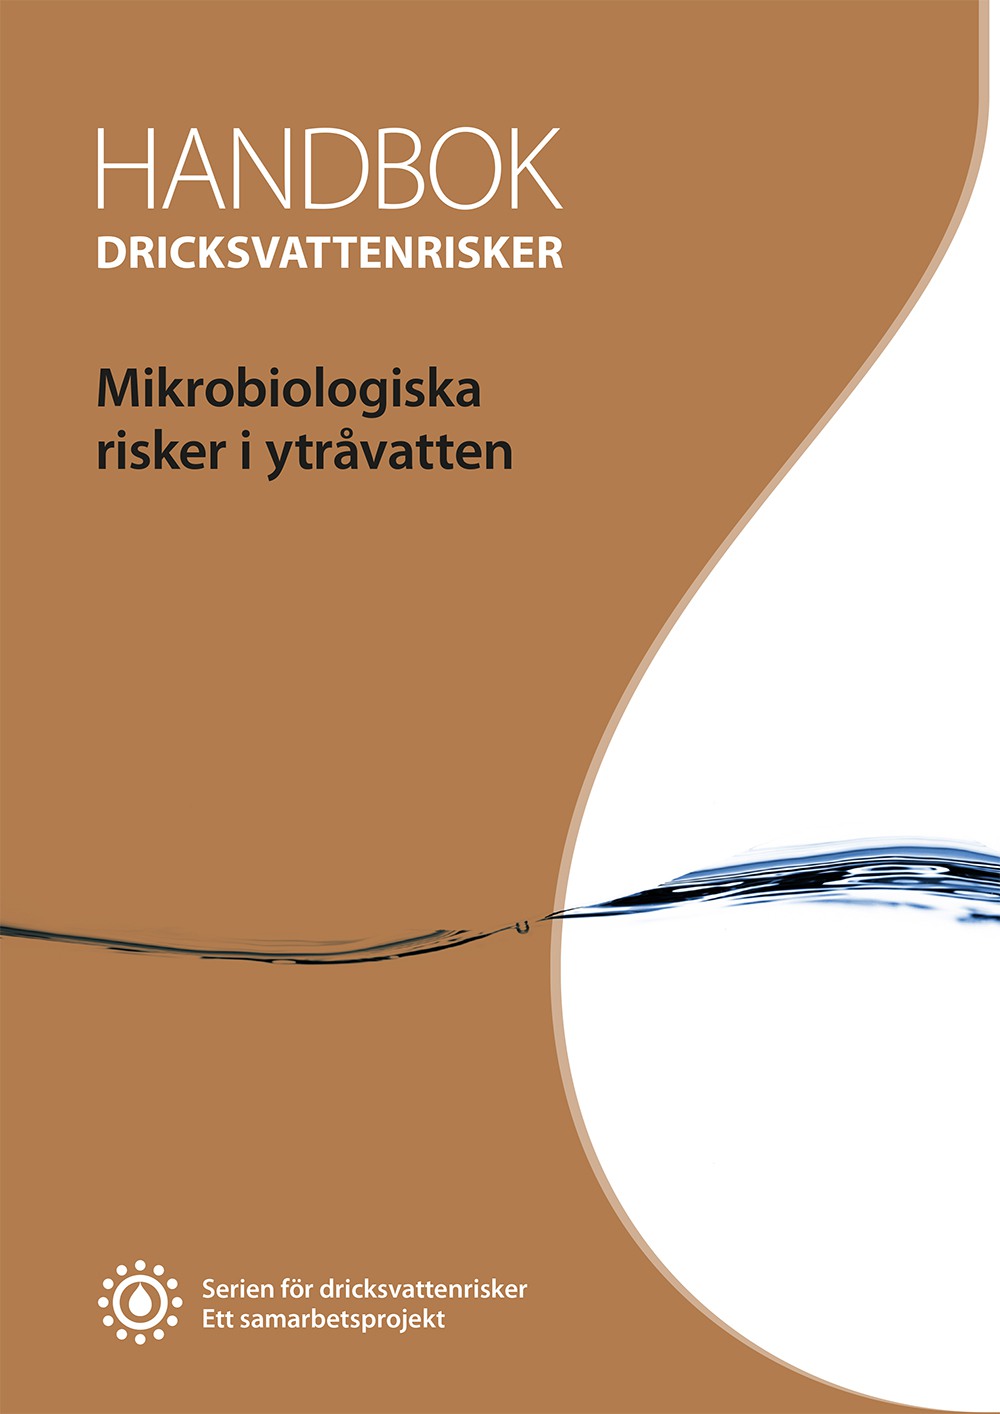 Framsidan av handboken Mikrobiologiska risker i ytråvatten